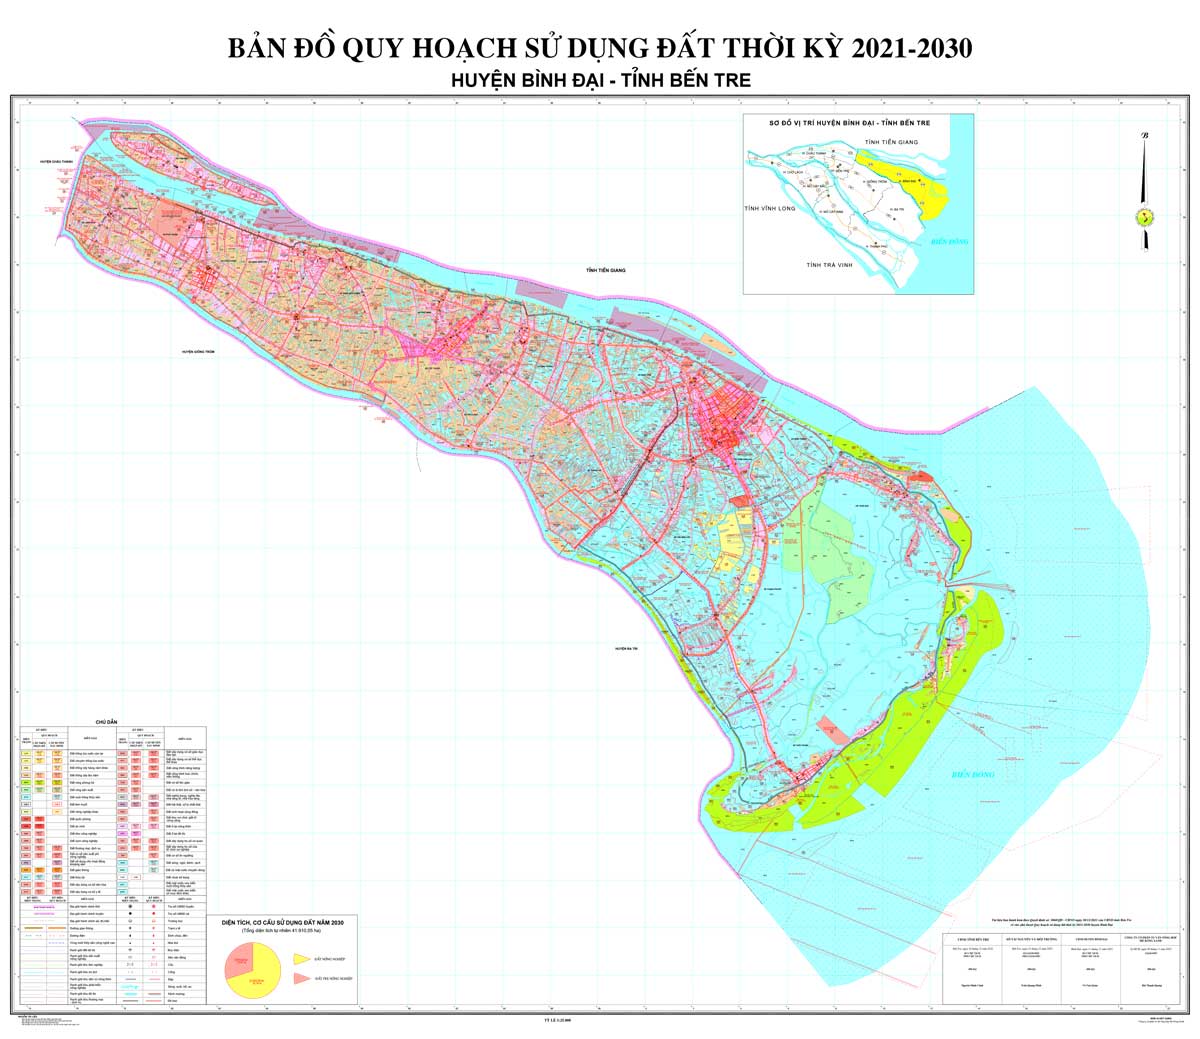 Bản đồ QHSDĐ huyện Bình Đại đến năm 2030